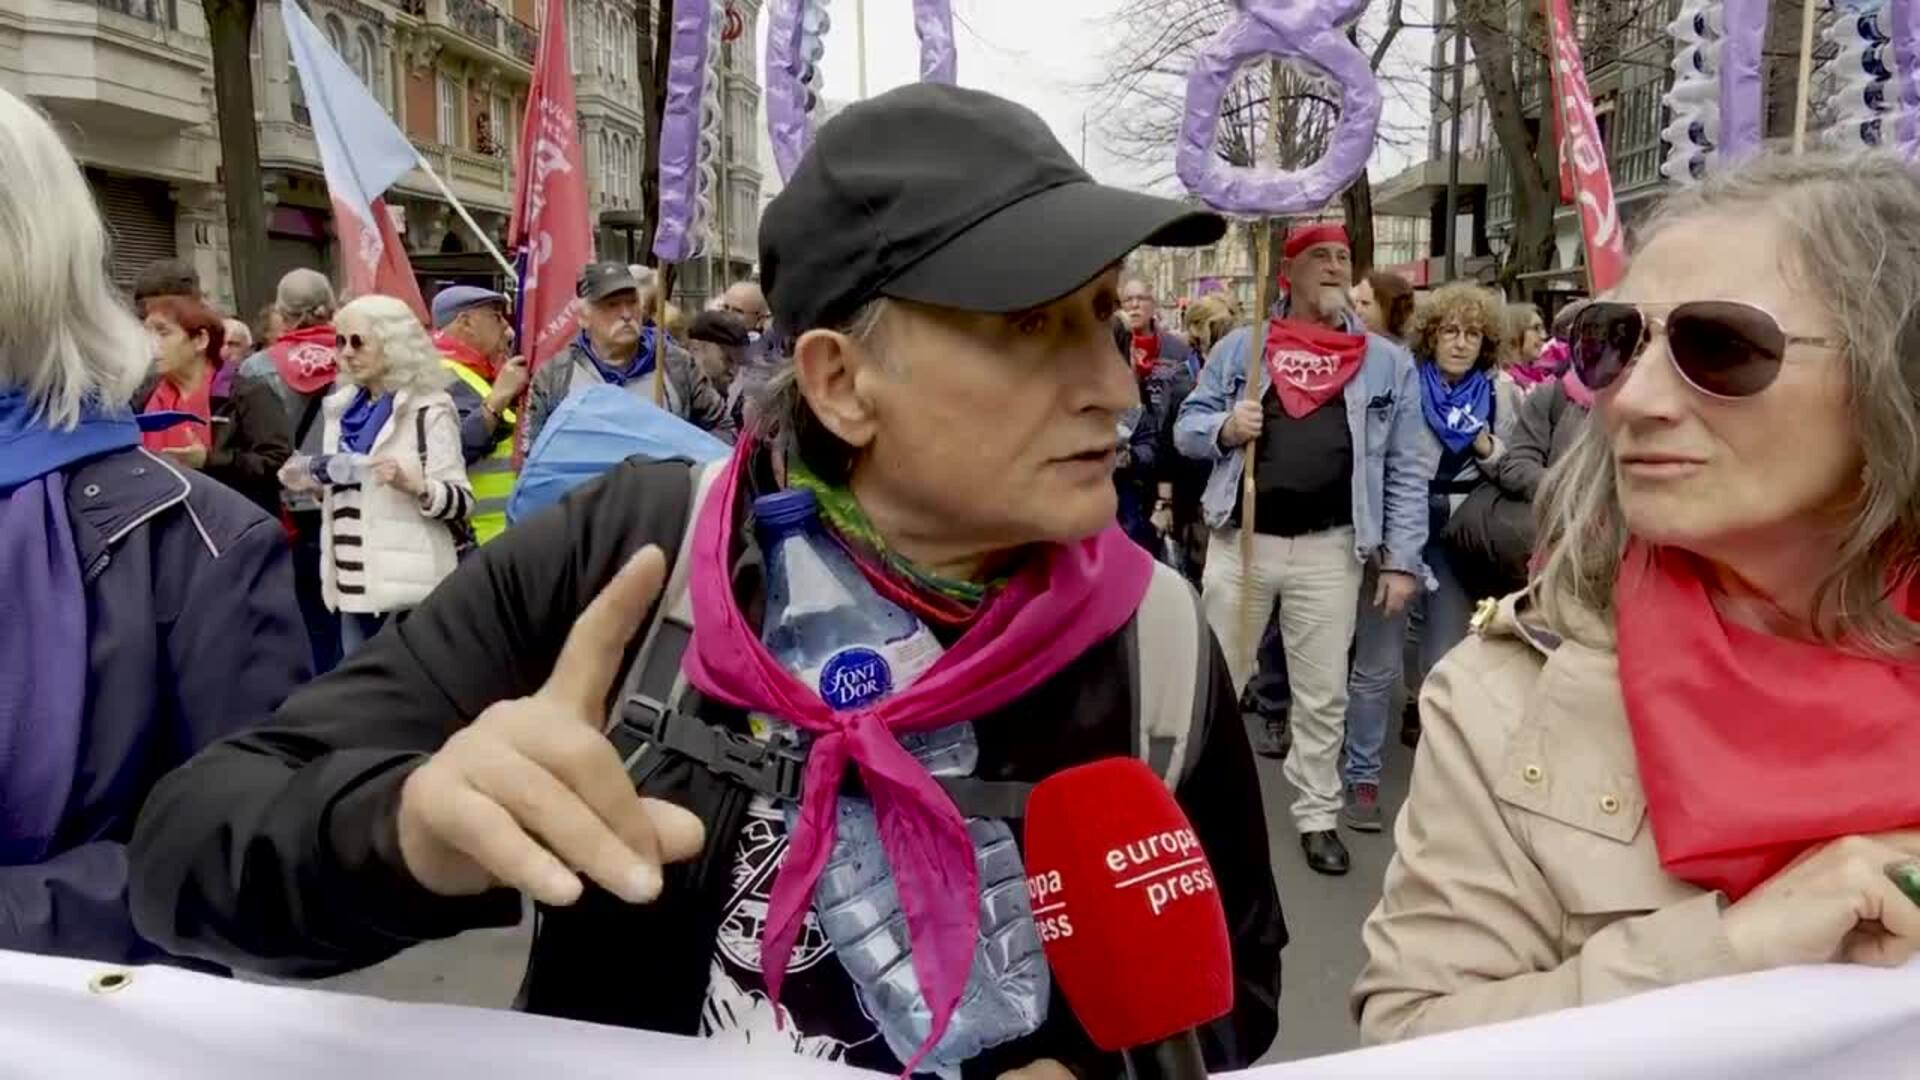 Miles de pensionistas vascos, en "lucha" hasta lograr pensiones mínimas "dignas" de 1.080 euros